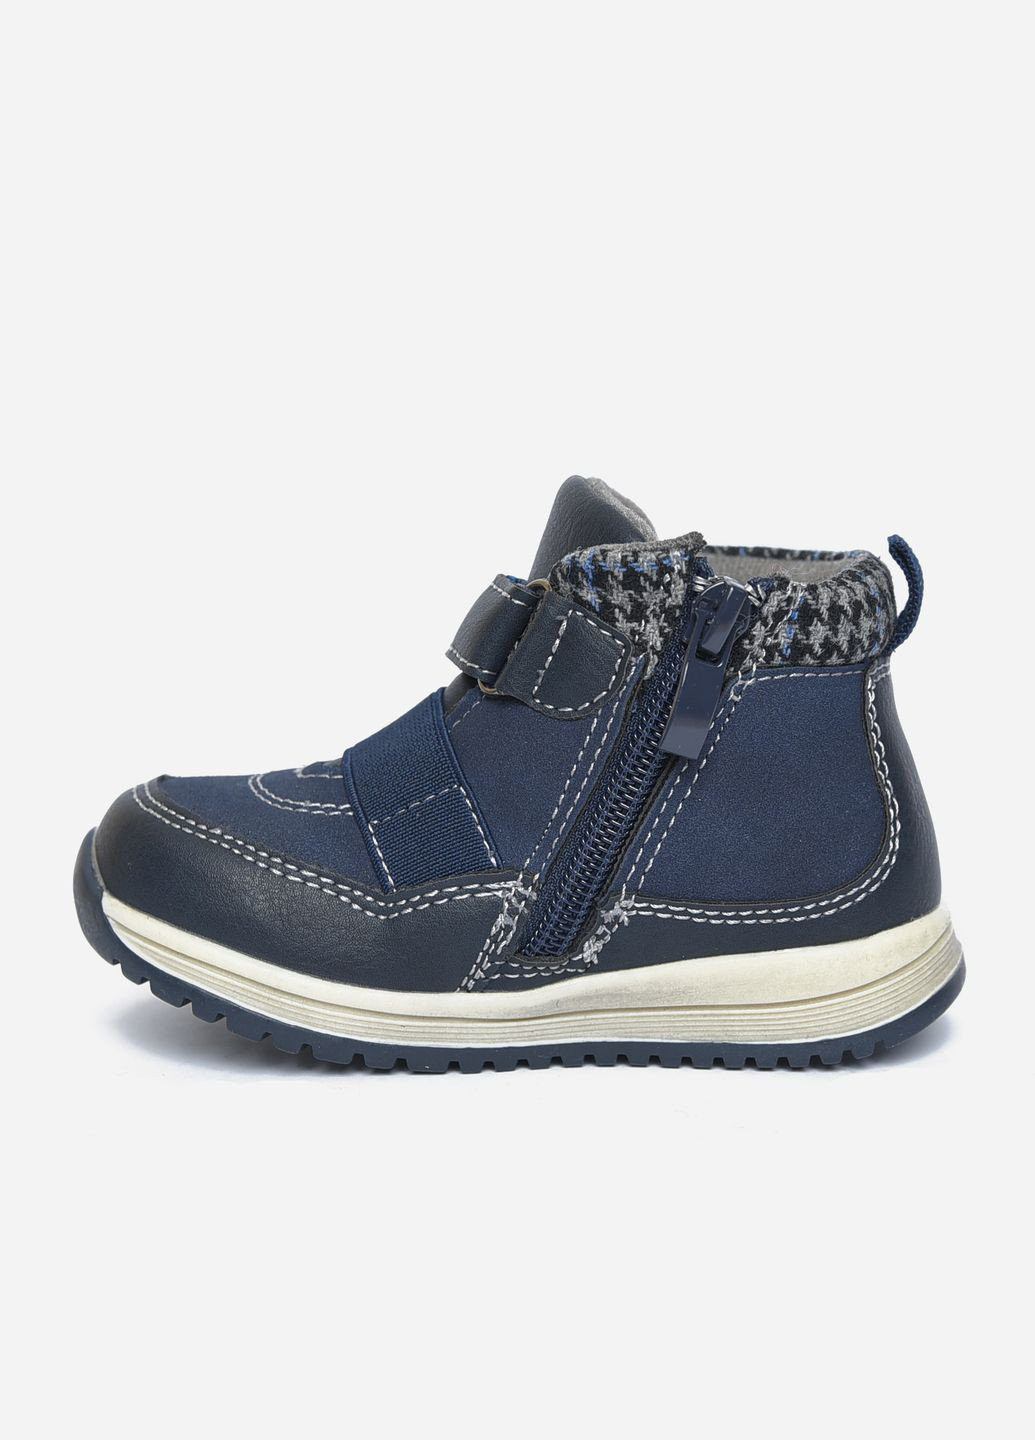 Темно-синие кэжуал осенние ботинки детские демисезонные для мальчика темно-синего цвета Let's Shop